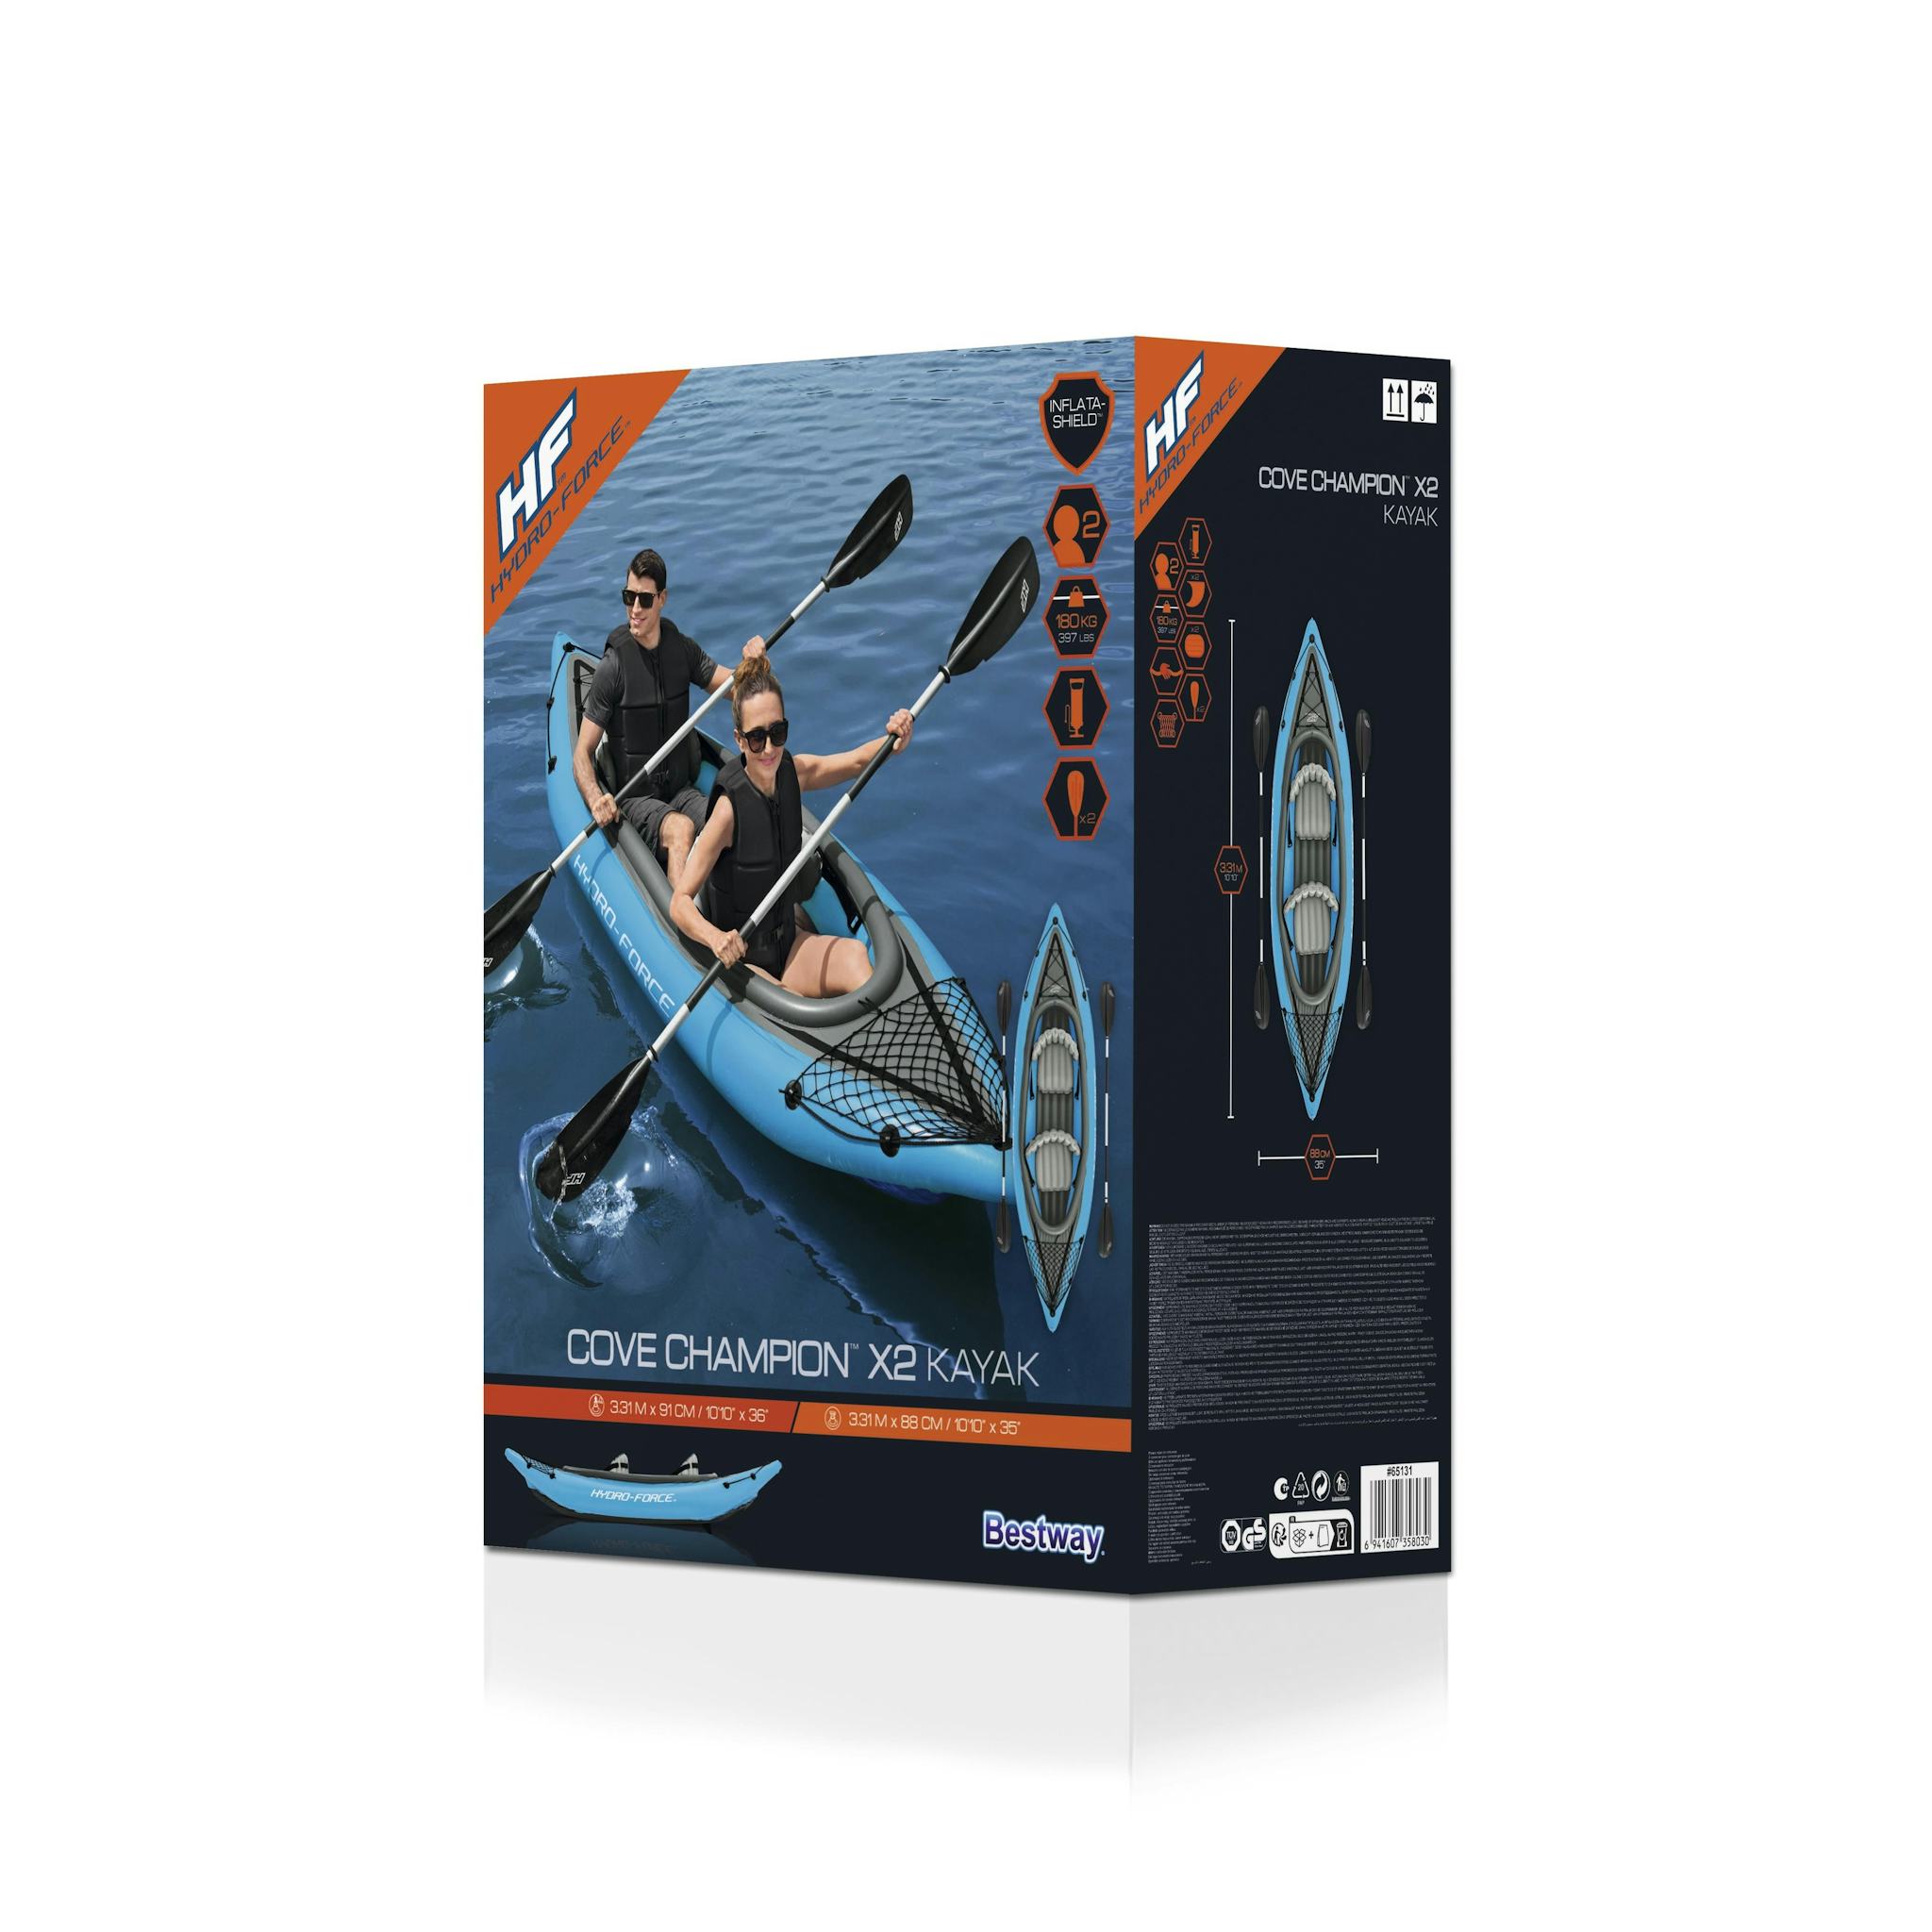 Sports d'eau Kayak gonflable Cove Champion X2 Hydro-Force™ 331 x 88cm, 2 places, 180 kg max, 2 pagaies, 2 ailerons amovibles et une pompe Bestway 8